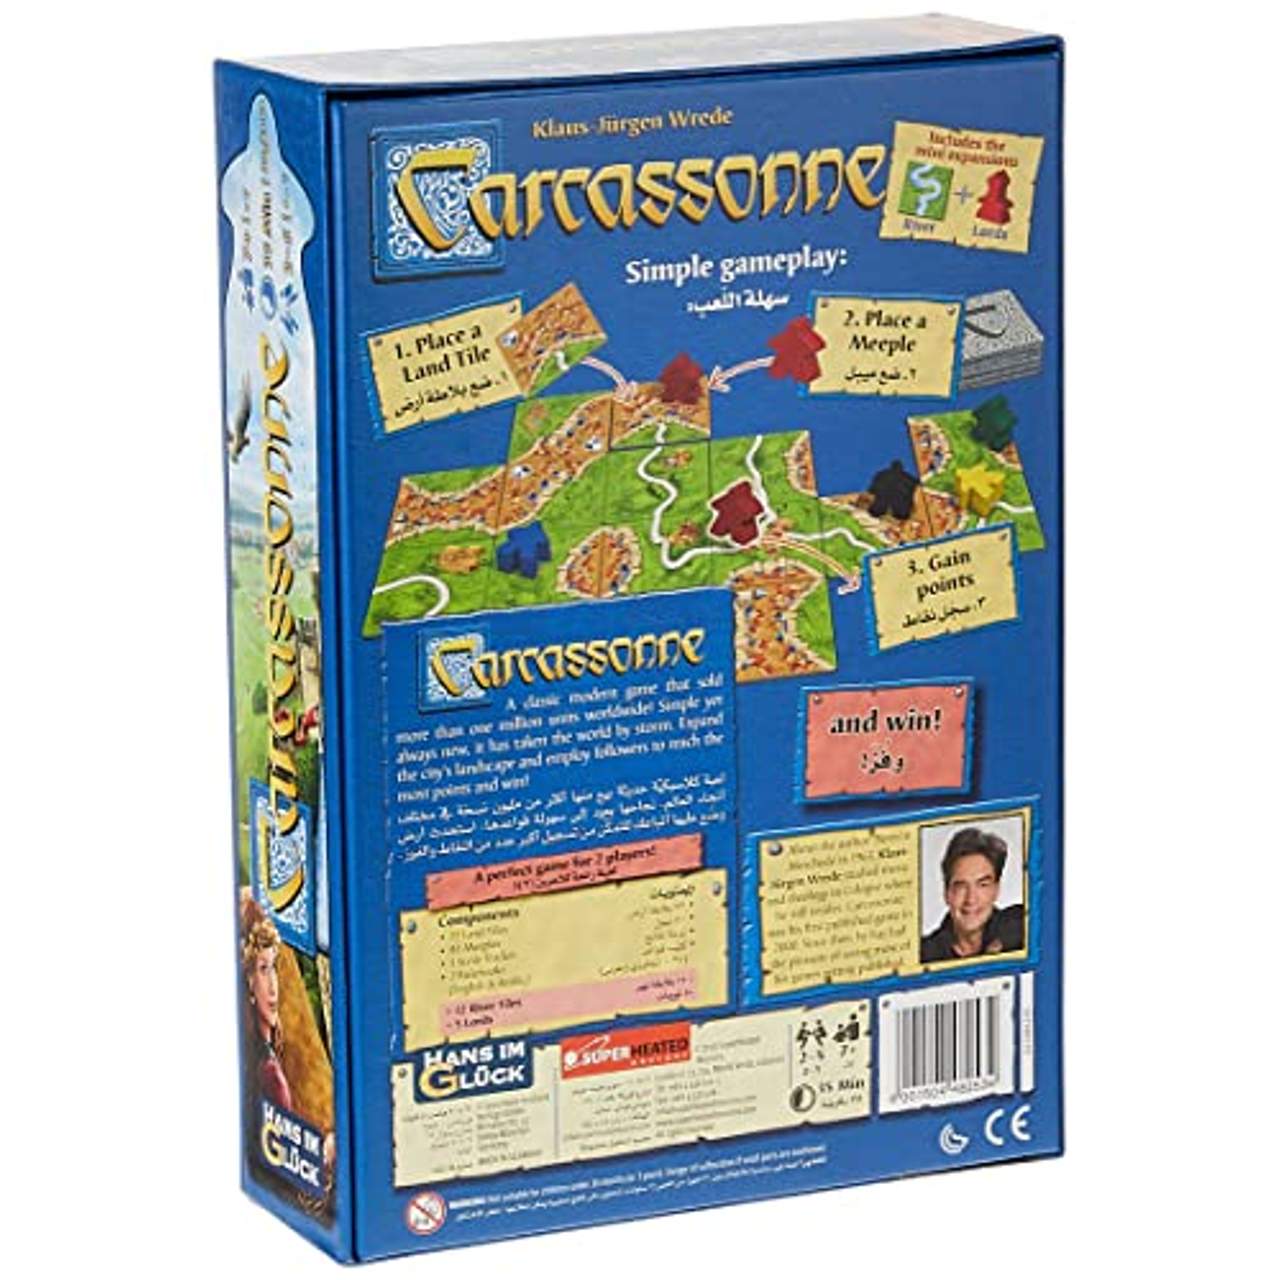  Carcassonne neue Edition, Spiel des Jahres 2001